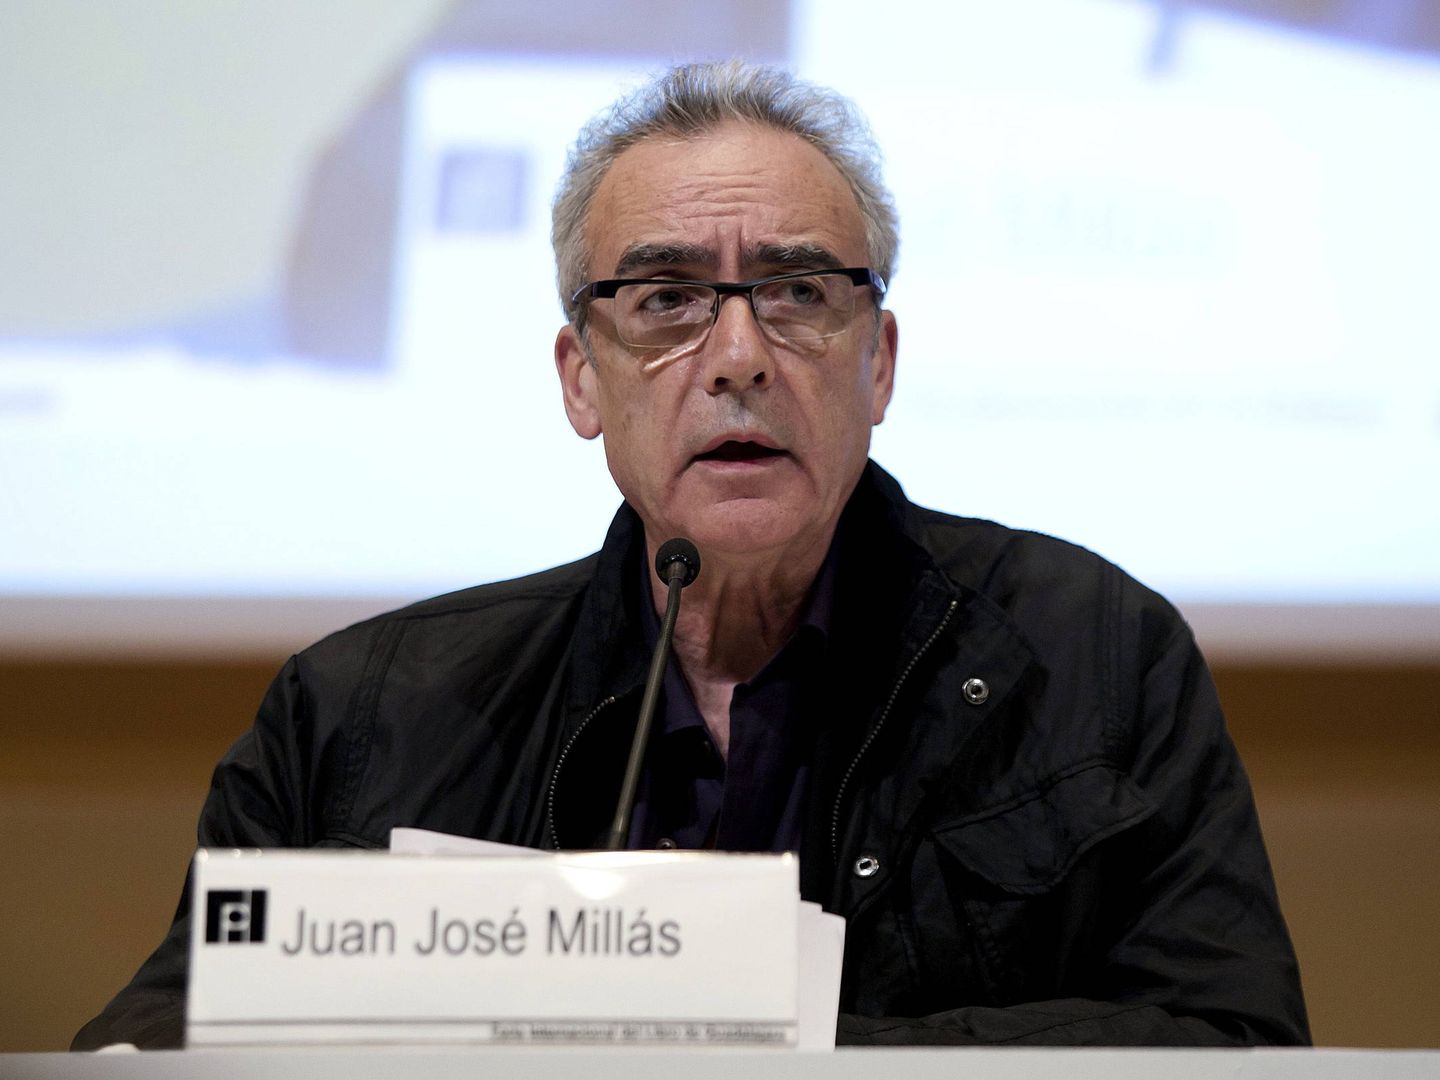 El escritor y periodista Juan José Millas, durante la Feria Internacional del Libro de 2010 | EFE 